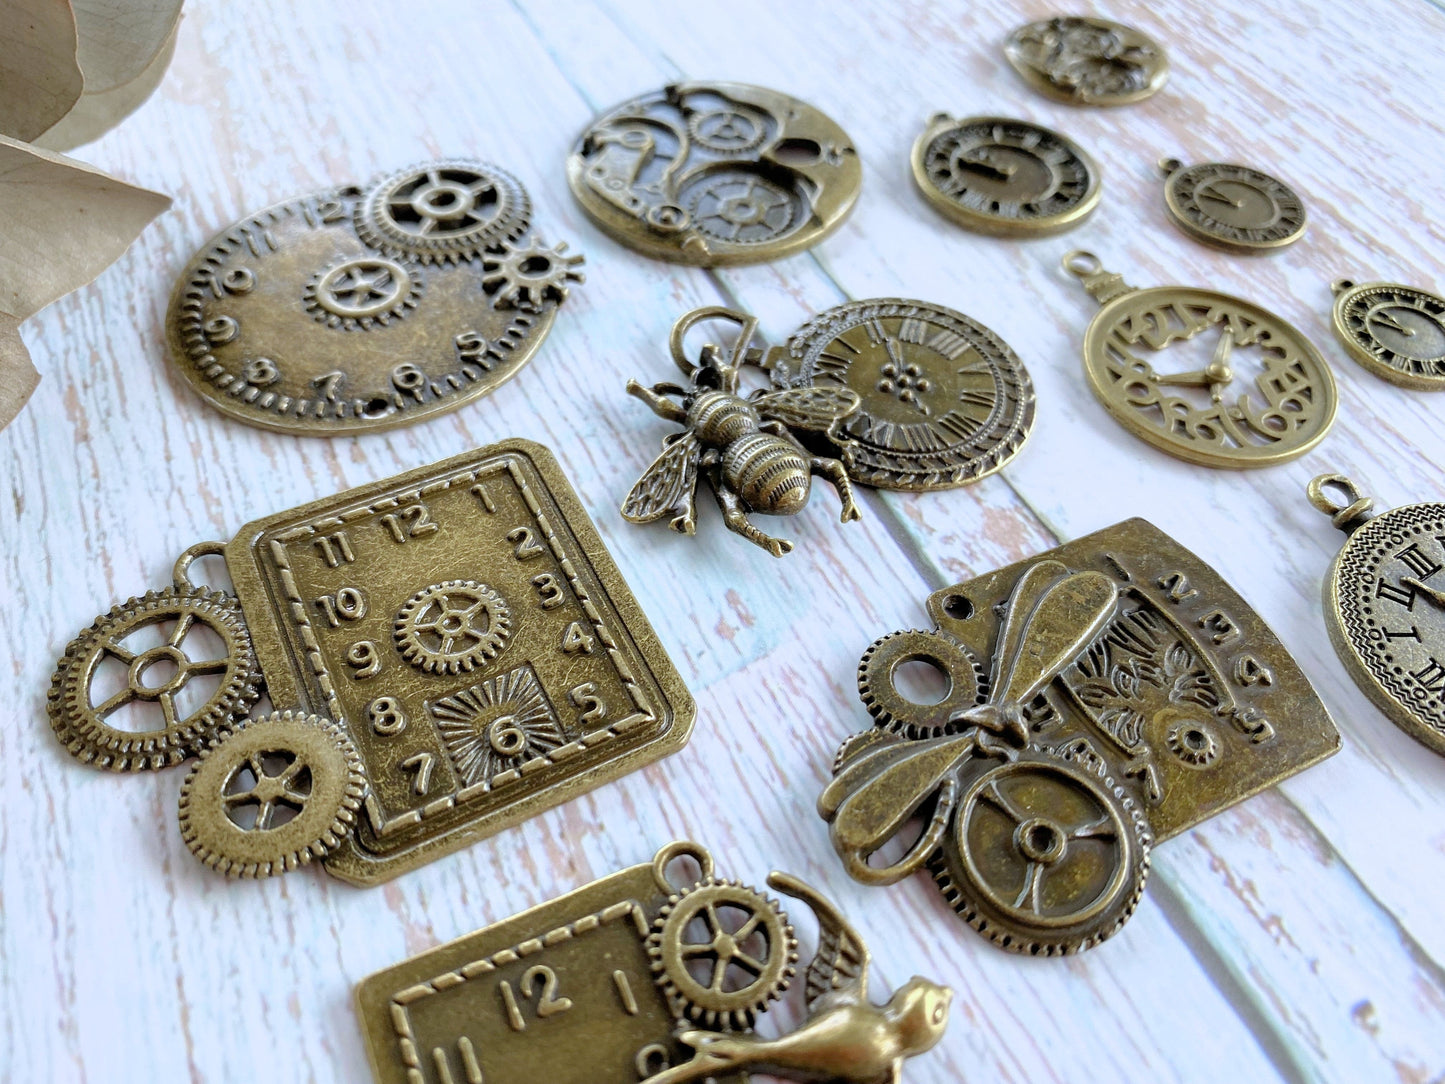 Charm Pendant 13pcs Set Steampunk Clock Embellishments Vialysa